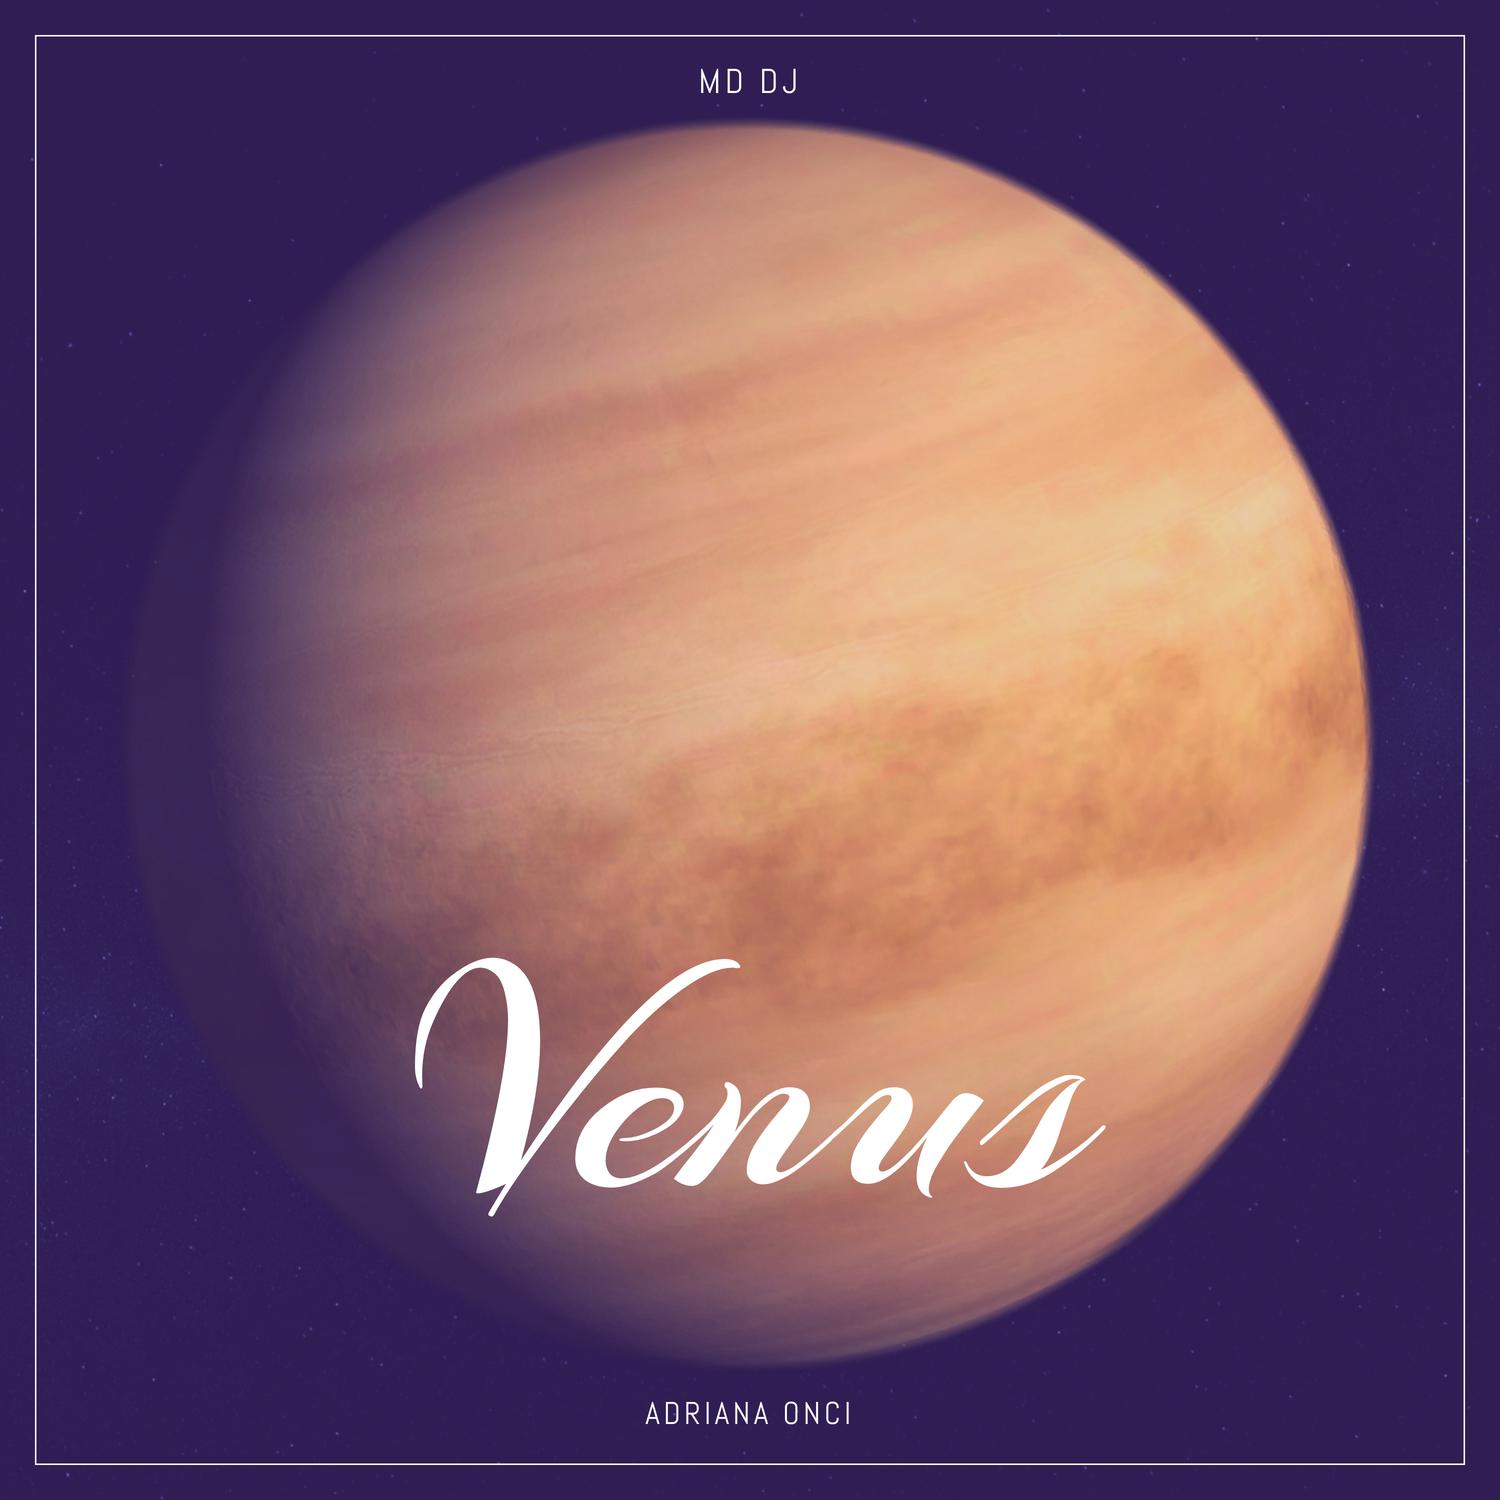 MD DJ - Venus